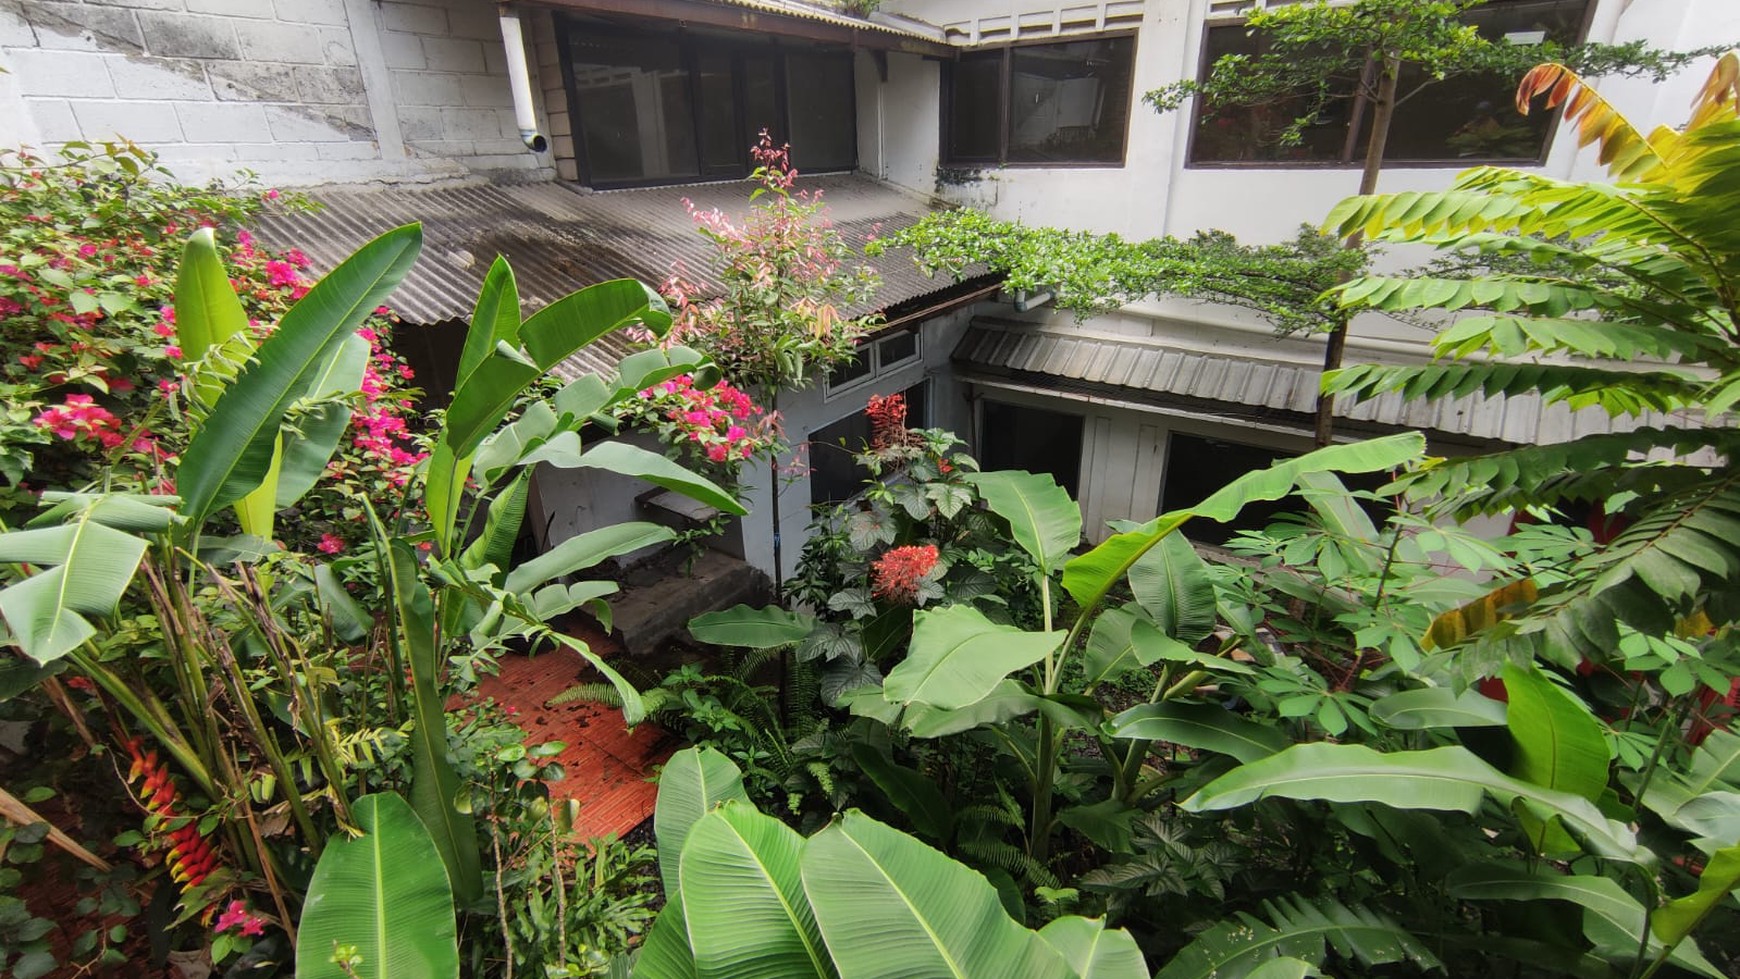 Rumah Cantik 5 Lantai di Bojong Koneng, Sayap Cikutra, Bandung